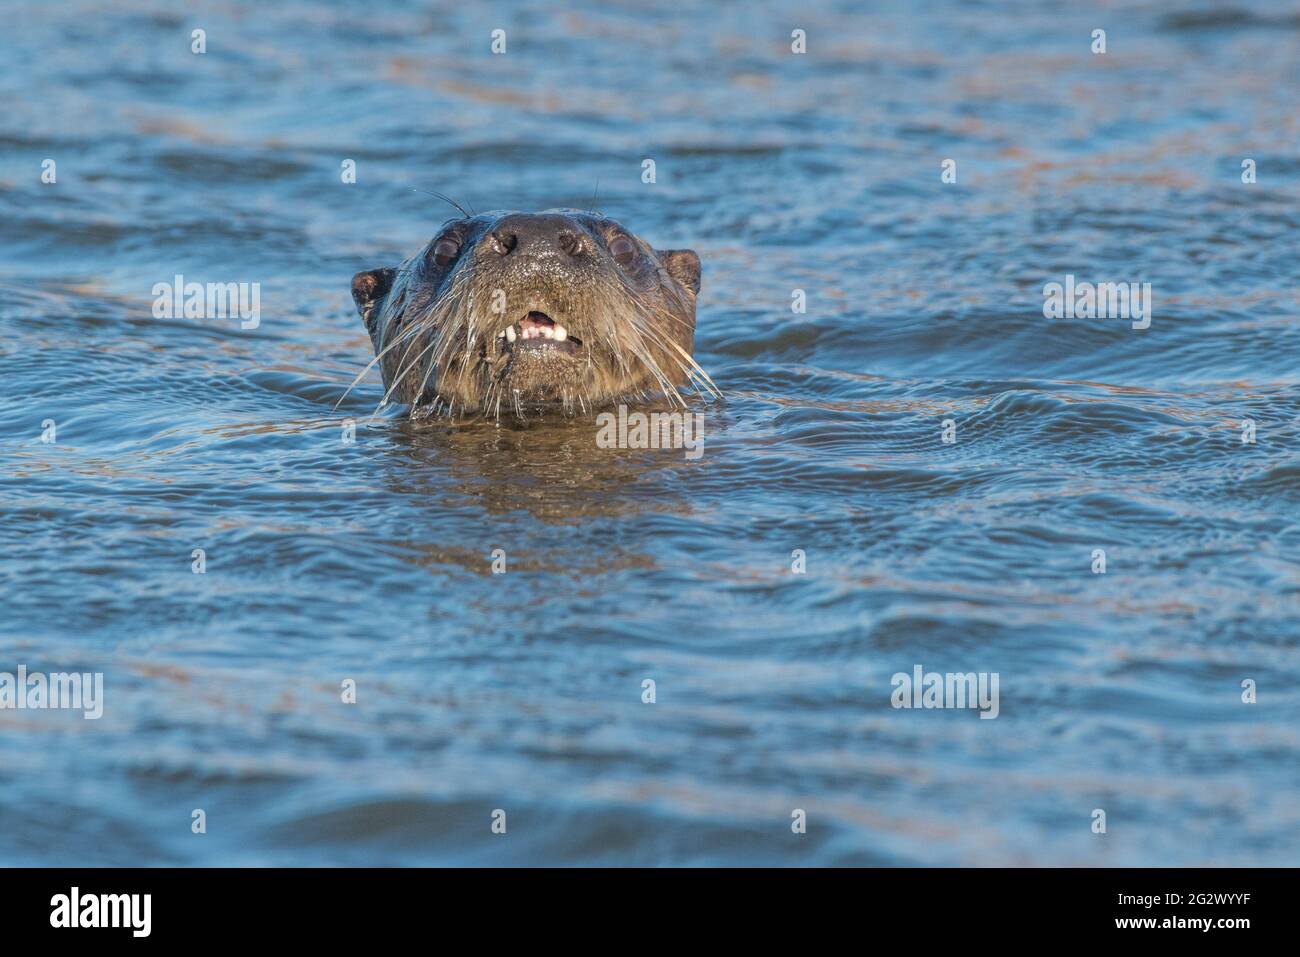 Loutre de rivière nord-américaine (Lontra canadensis) nageant dans un canal dans la zone sauvage de la dérivation de Yolo, près de Sacramento, en Californie. Banque D'Images